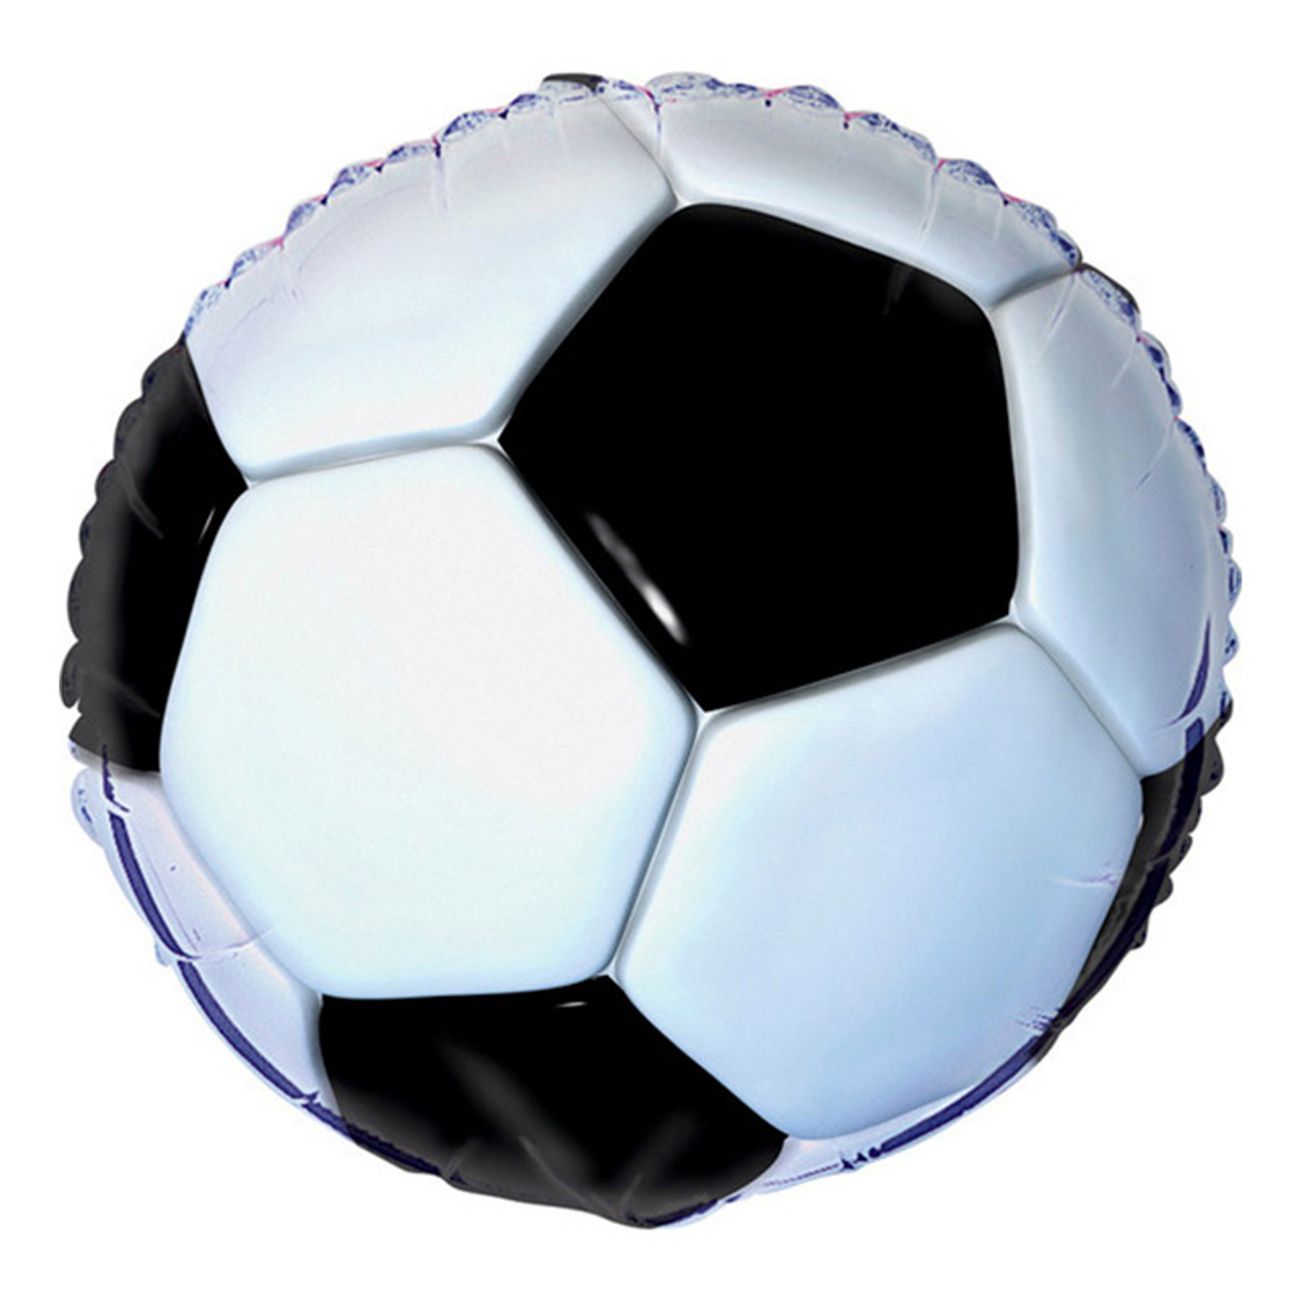 Folieballong Fotboll